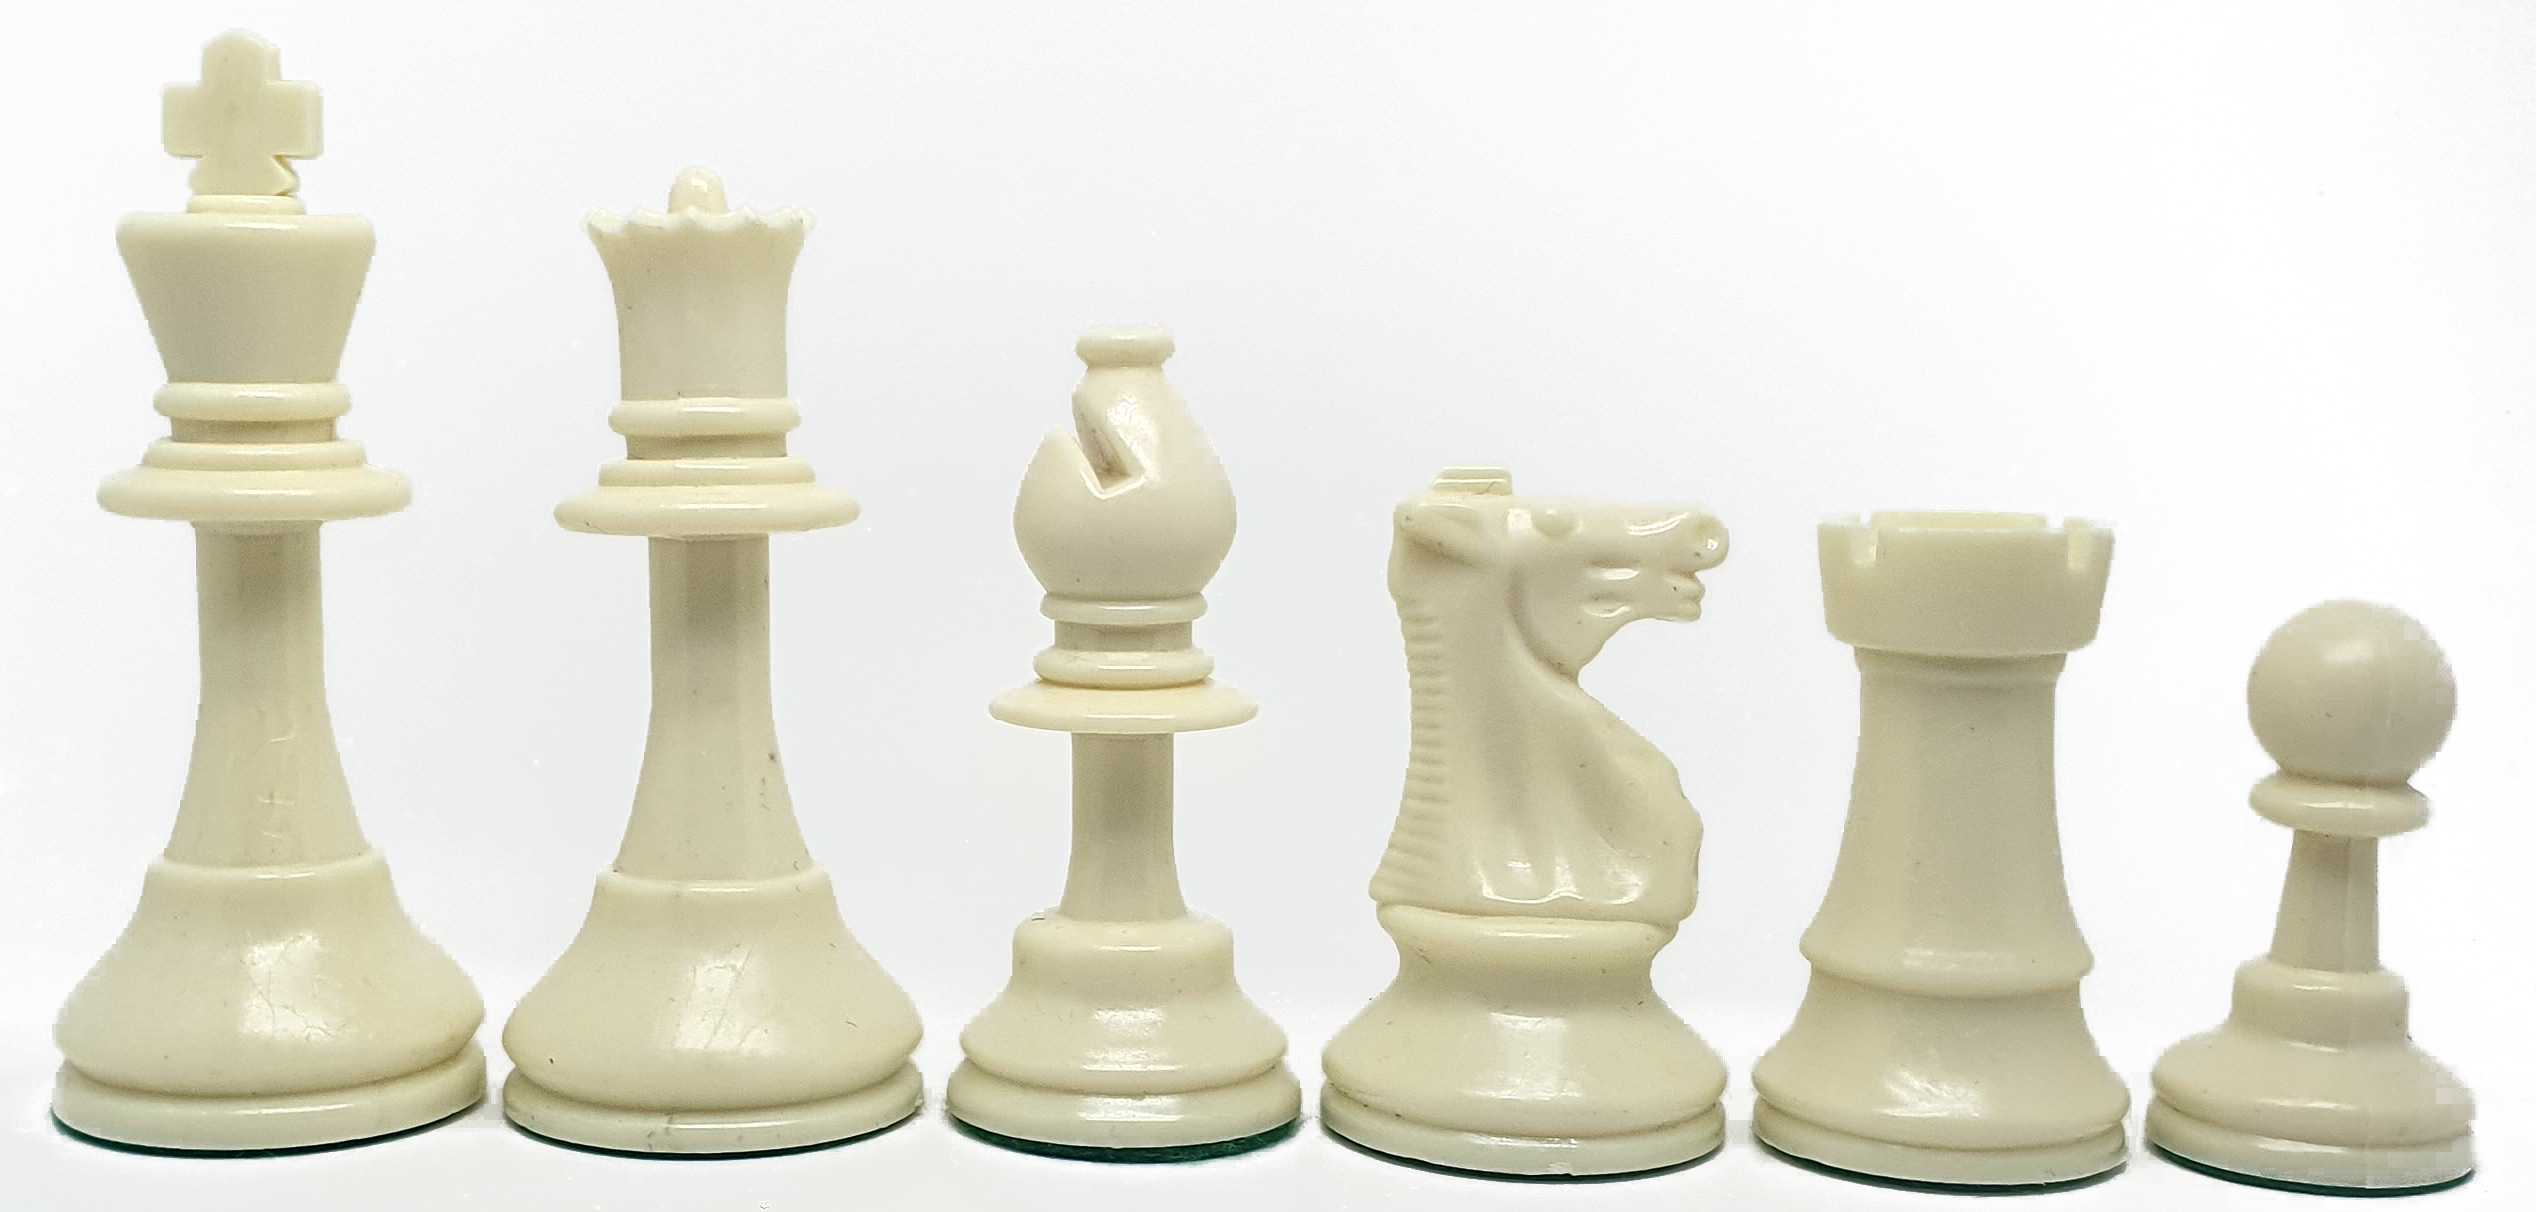 Piezas de ajedrez de plástico Staunton 5 estándar. Doble dama (altura del rey: 9cm).